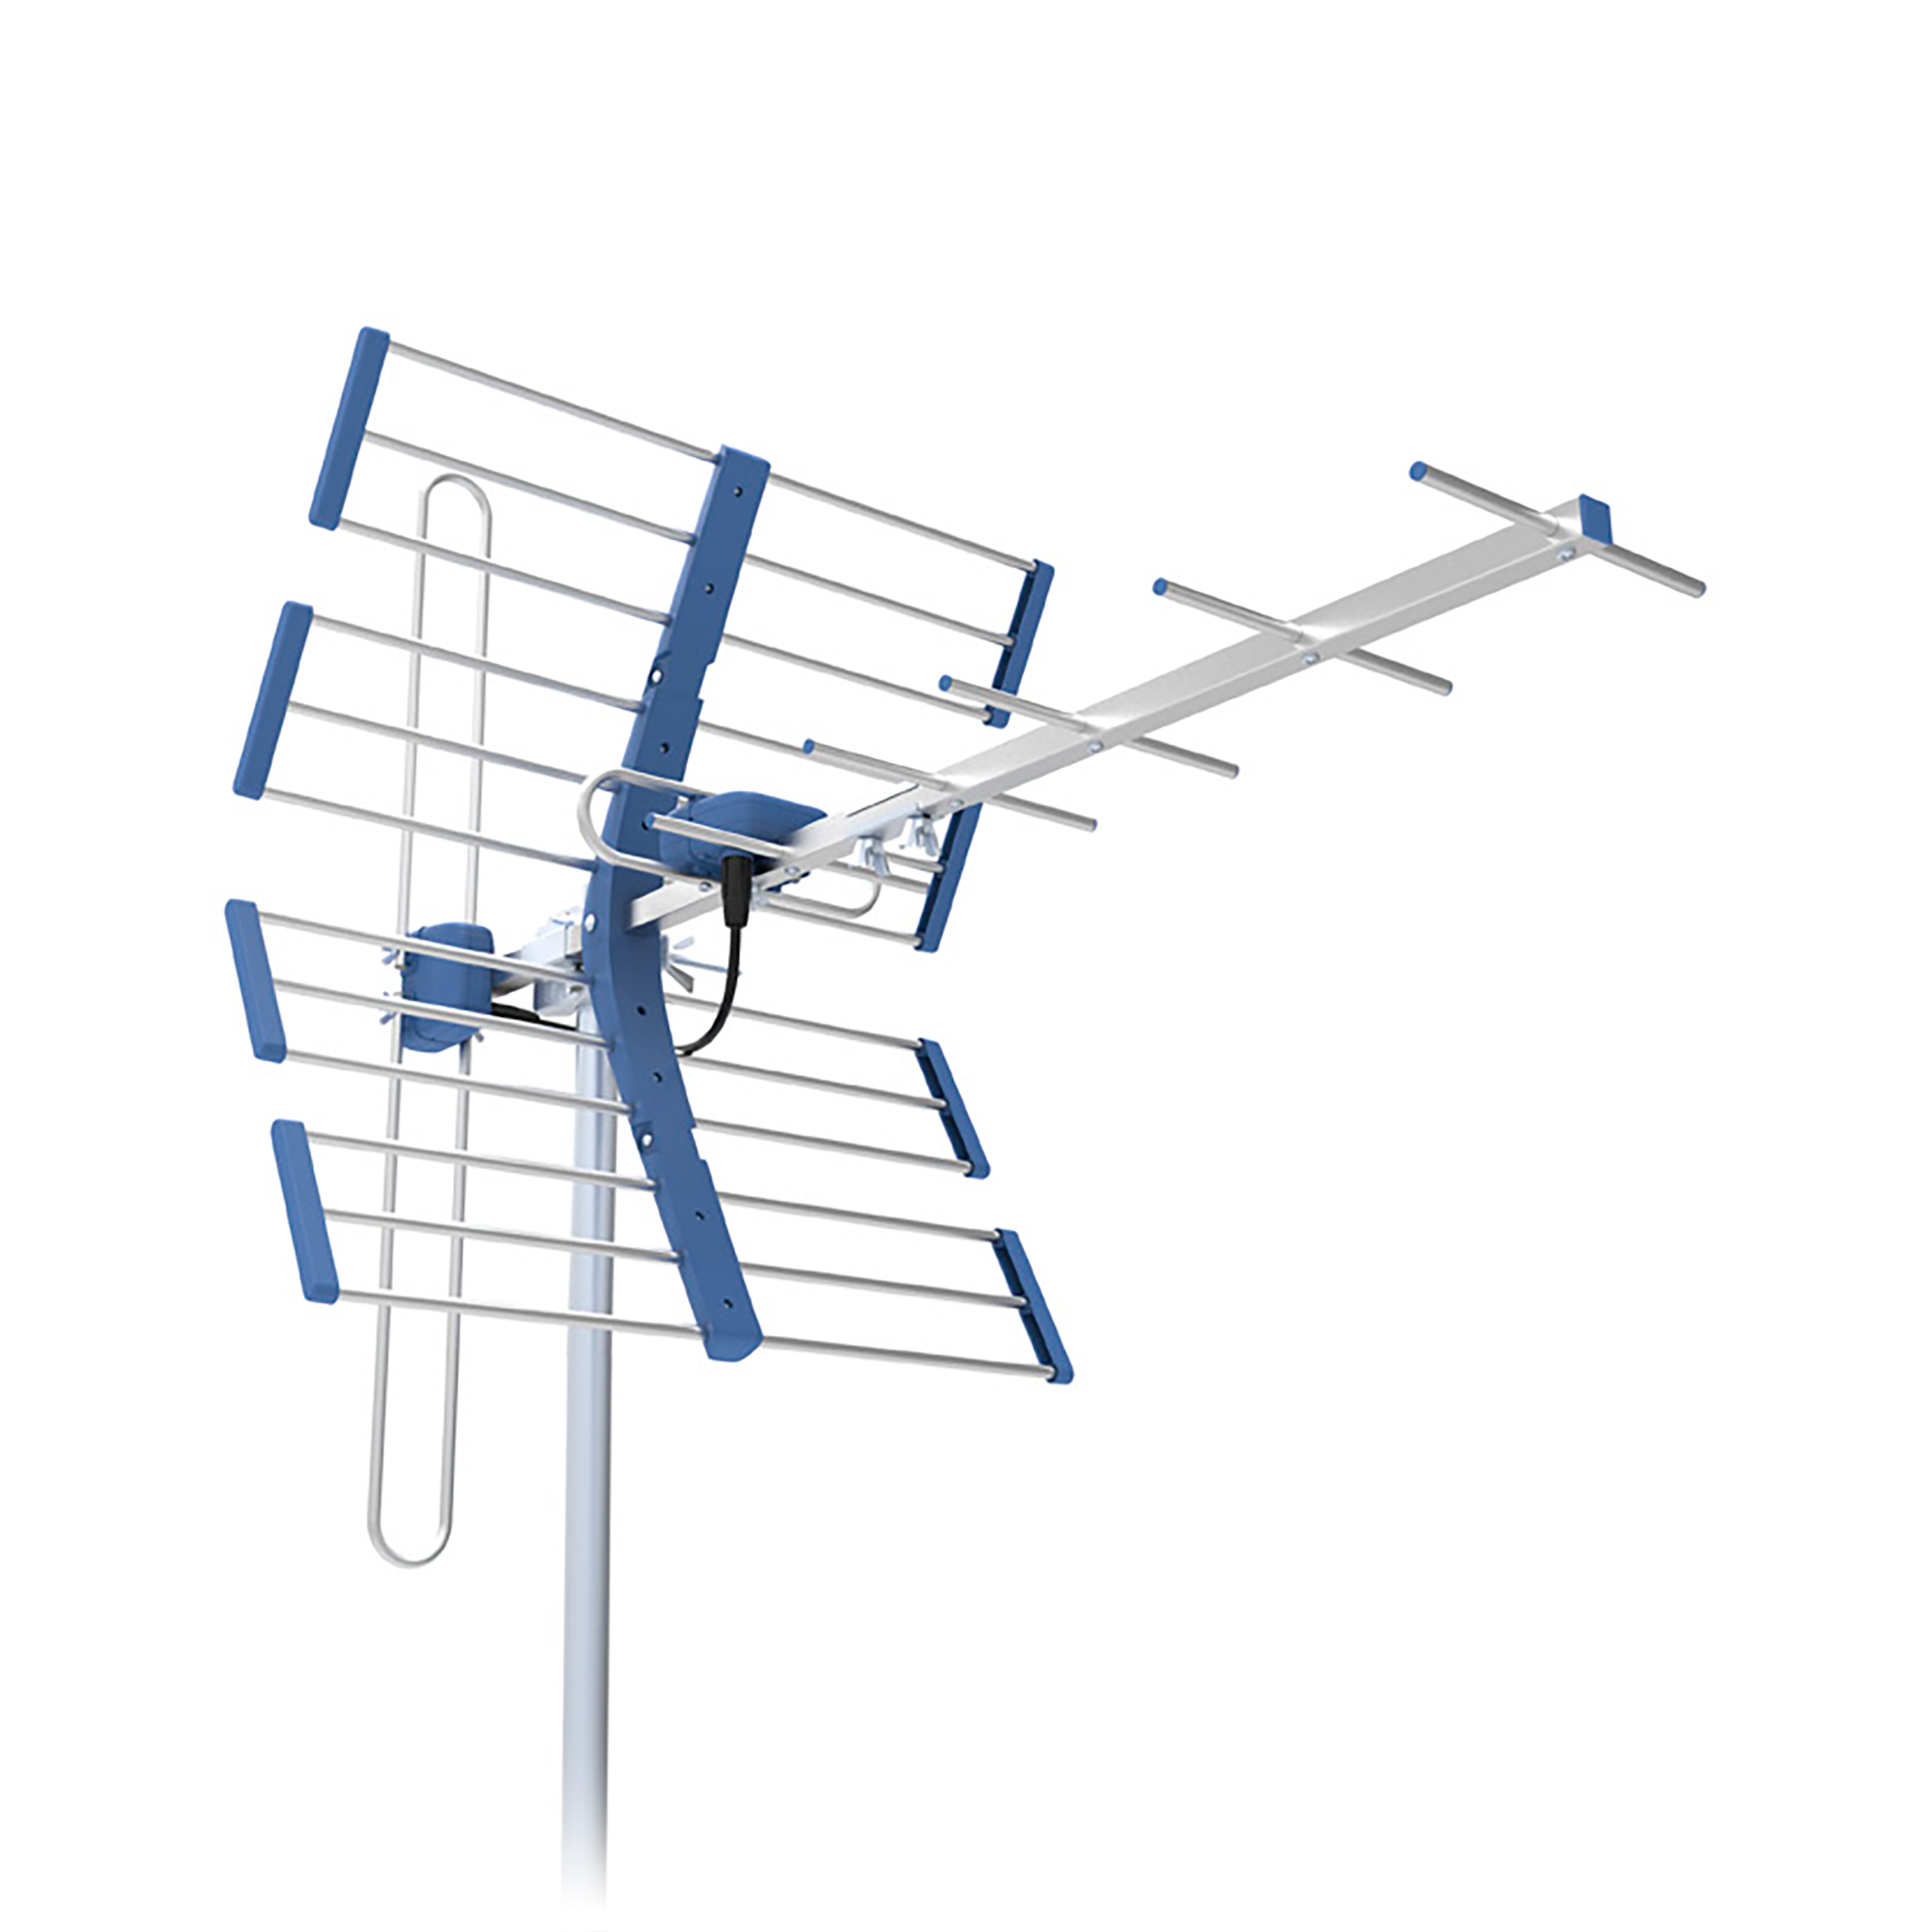 LEC-ANT0711------------Cechy----------Antena combo - pasmo VHF + UHFTechnologia 5G ProtectedRegulowana polaryzacja pasma VHFSzybki montaż, bez narzędziGotowa do odbioru pasma DVB-T/T2 i DAB+Konstrukcja odporna na warunki atmosferyczneDipol ze zwrotnicą VHF/UHF---